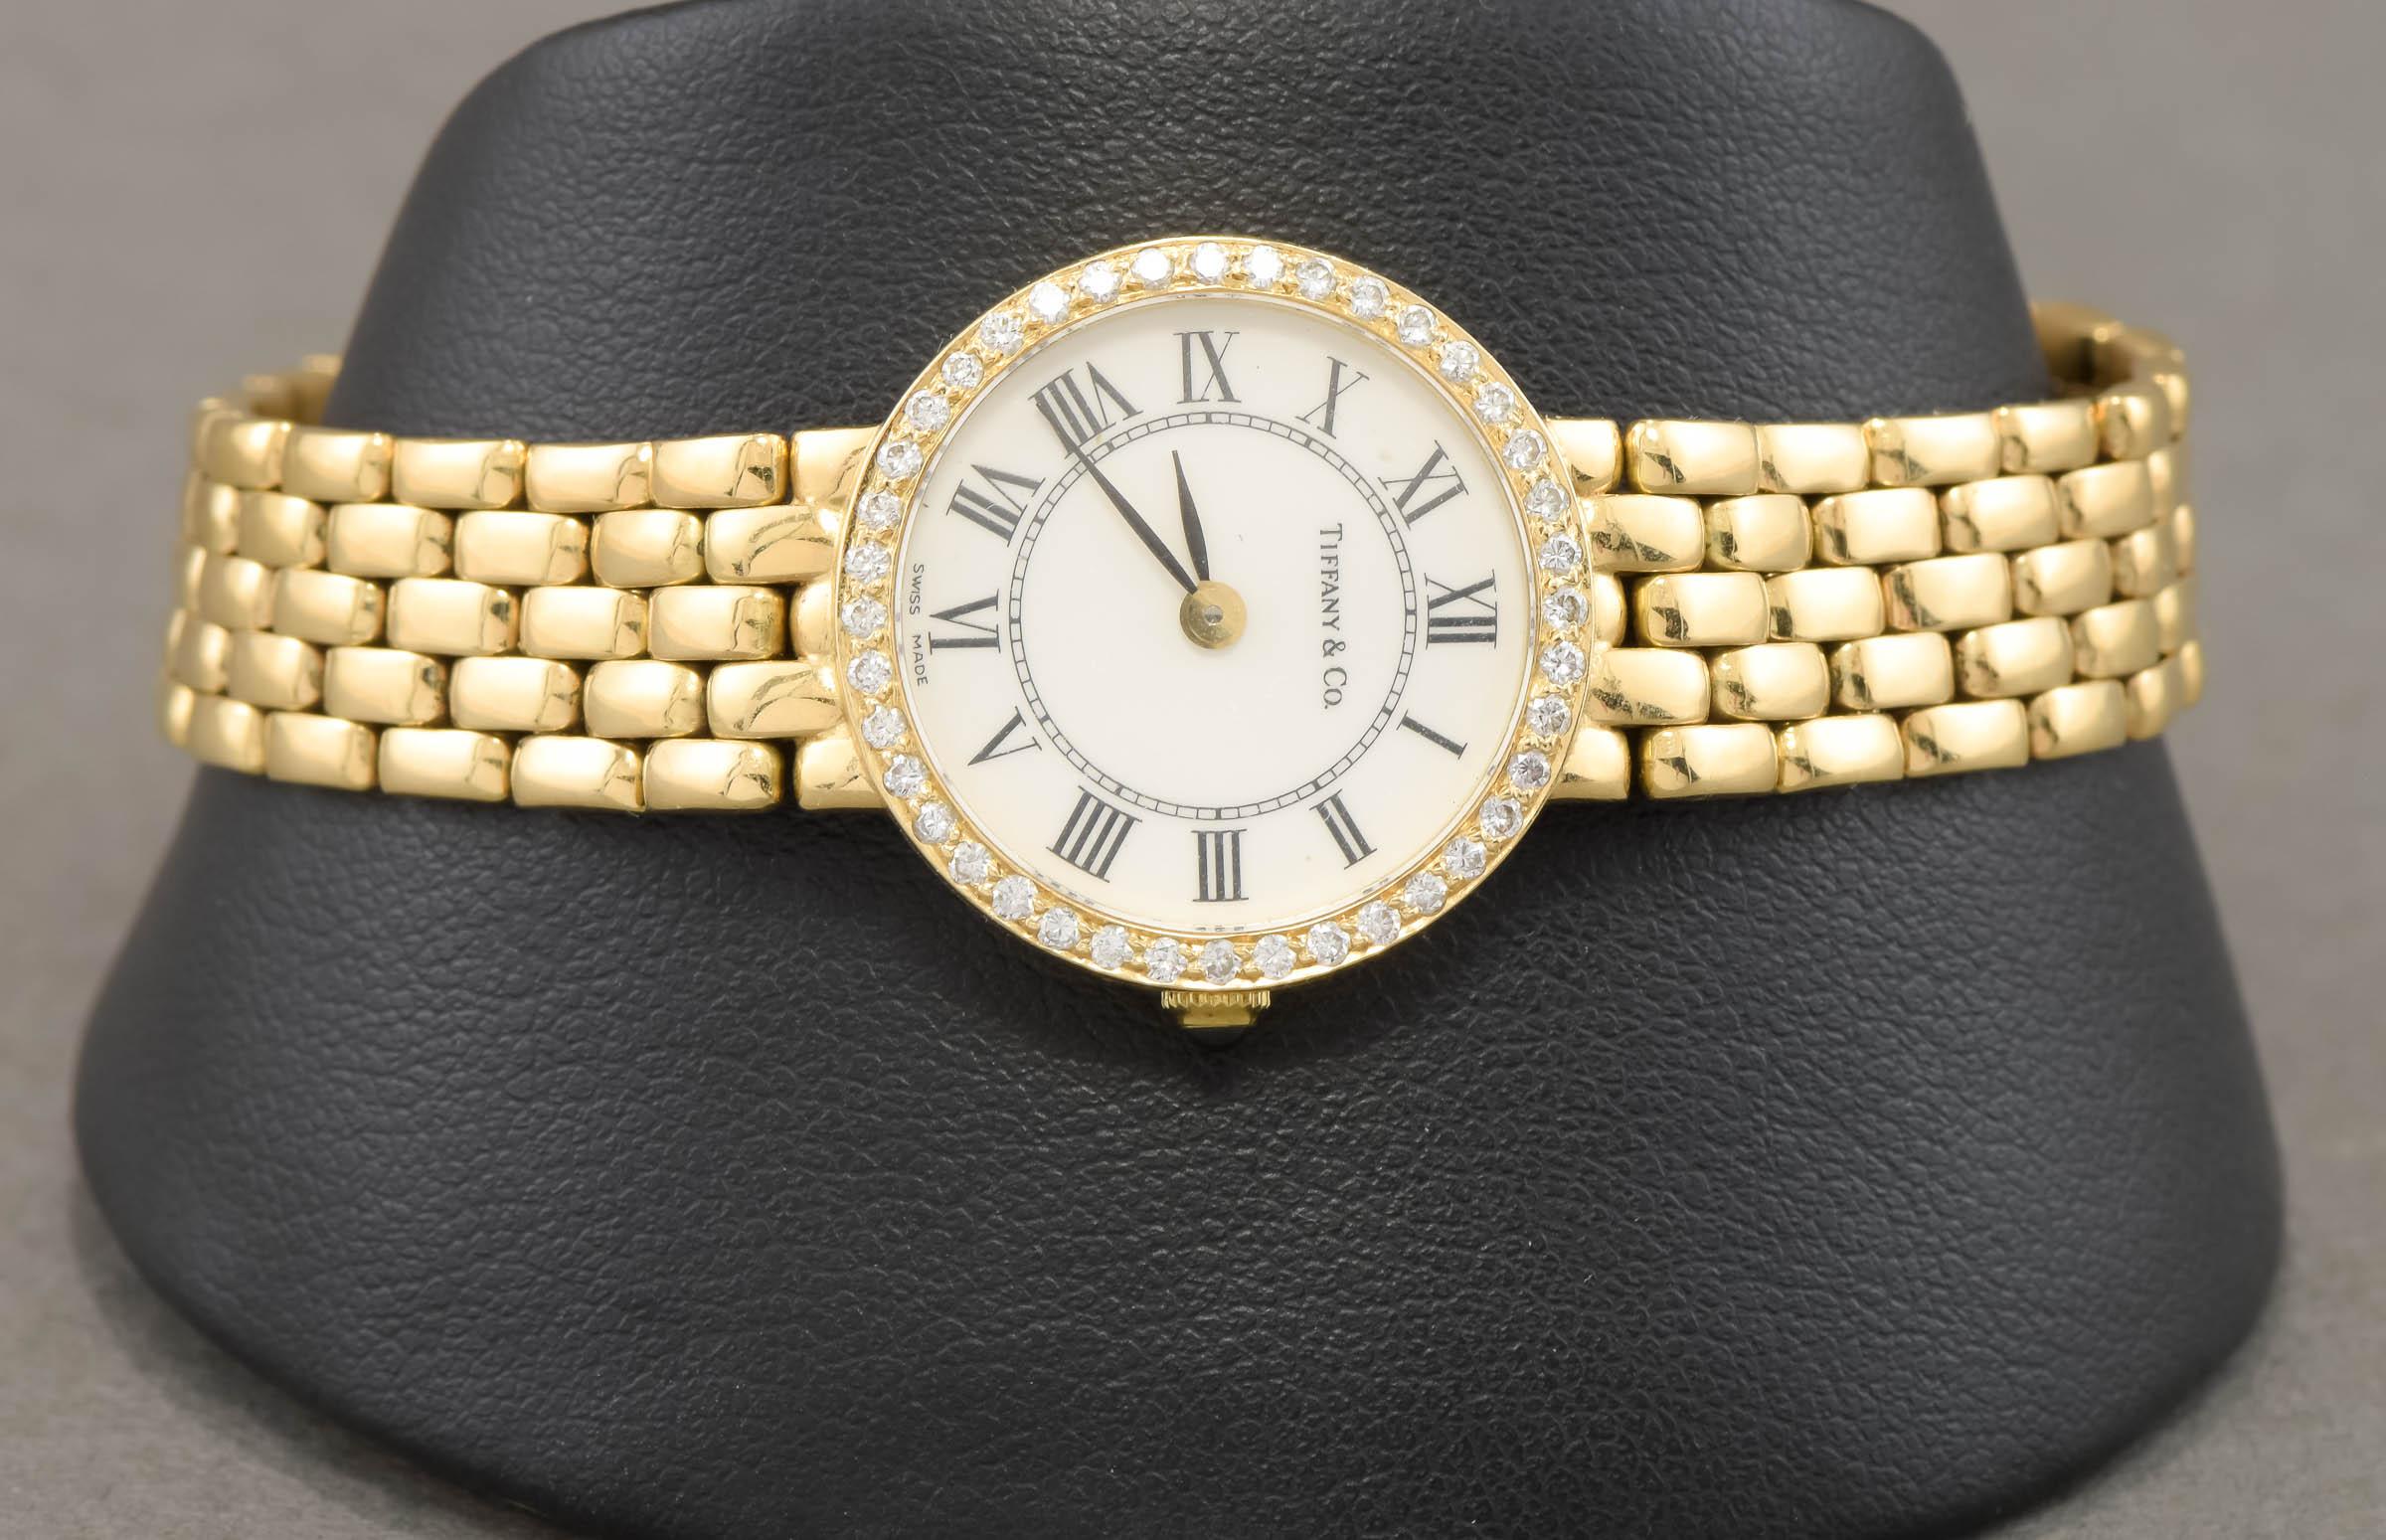 D'une élégance classique, cette charmante montre pour femmes de Tiffany & Co. est polyvalente - parfaite pour les occasions décontractées et habillées. Elle est parfaitement à l'heure et prête à être portée et appréciée.

Le boîtier et le bracelet